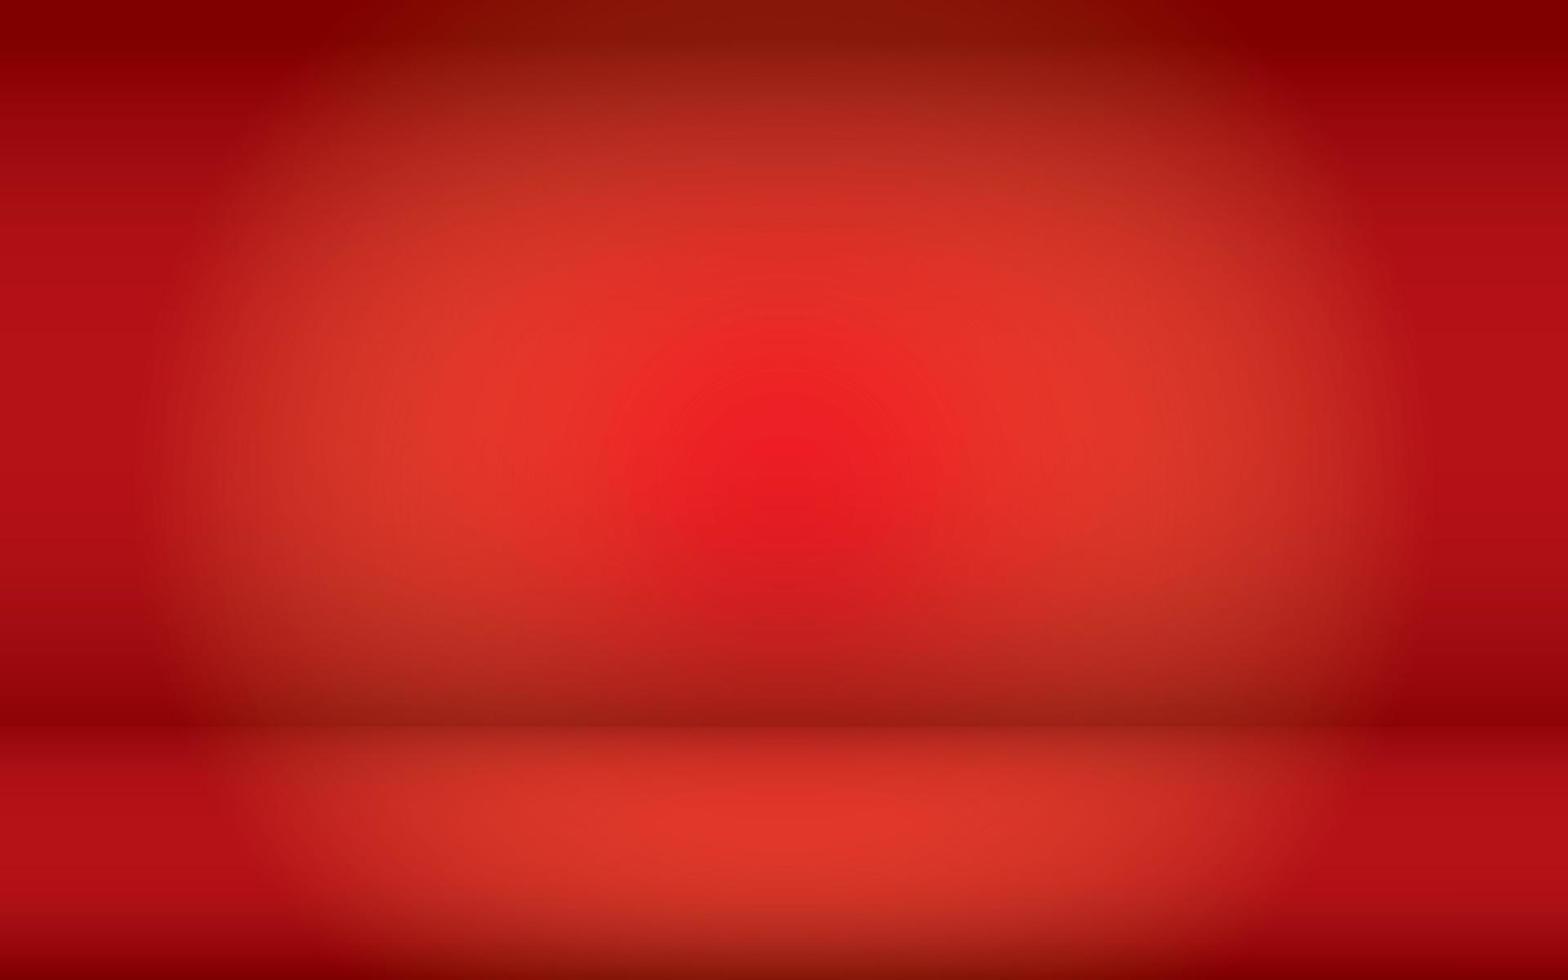 fondo rojo degradado espacio vacío sala de estudio para anuncios de visualización producto sitio web plantilla papel tapiz estudio ilustración vectorial, vector